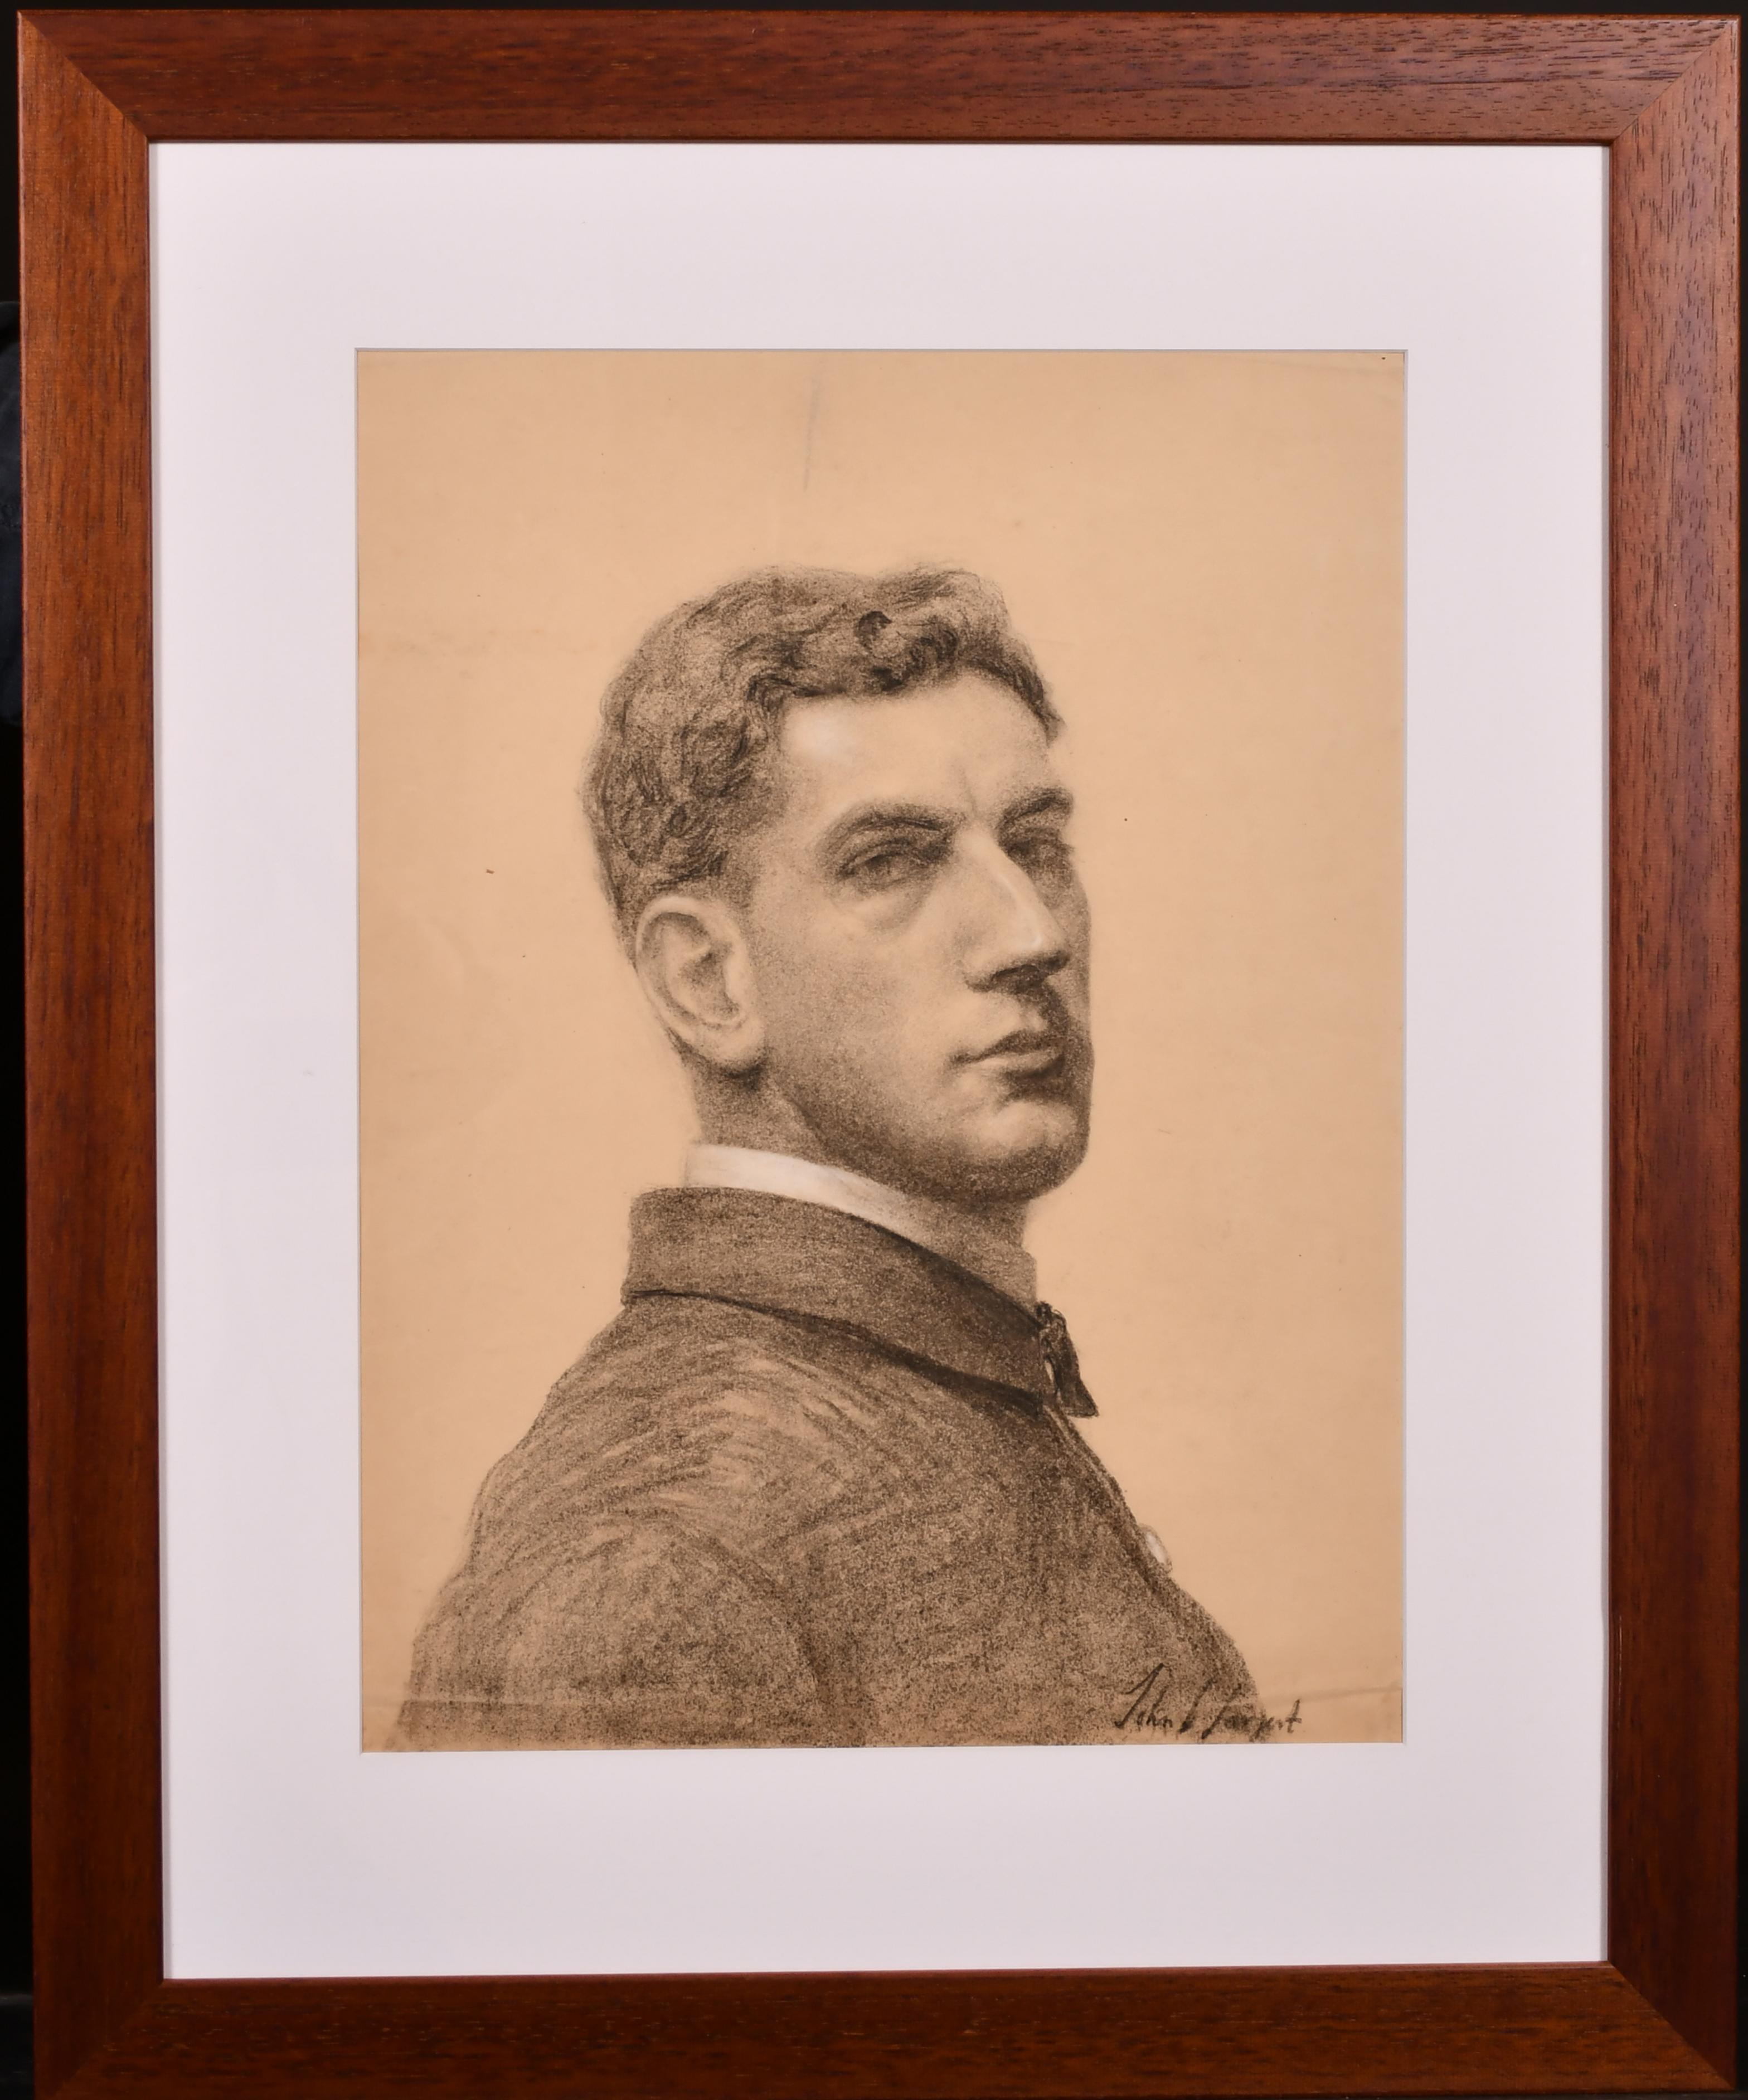 Signé plus tard comme John Singer Sargent, un portrait au fusain de Keith McLeod.  (artiste américain), dessin de qualité musée très rare.
Alphonse Legros était connu pour apprendre à ses élèves à dessiner de mémoire. Il était capable de dessiner en